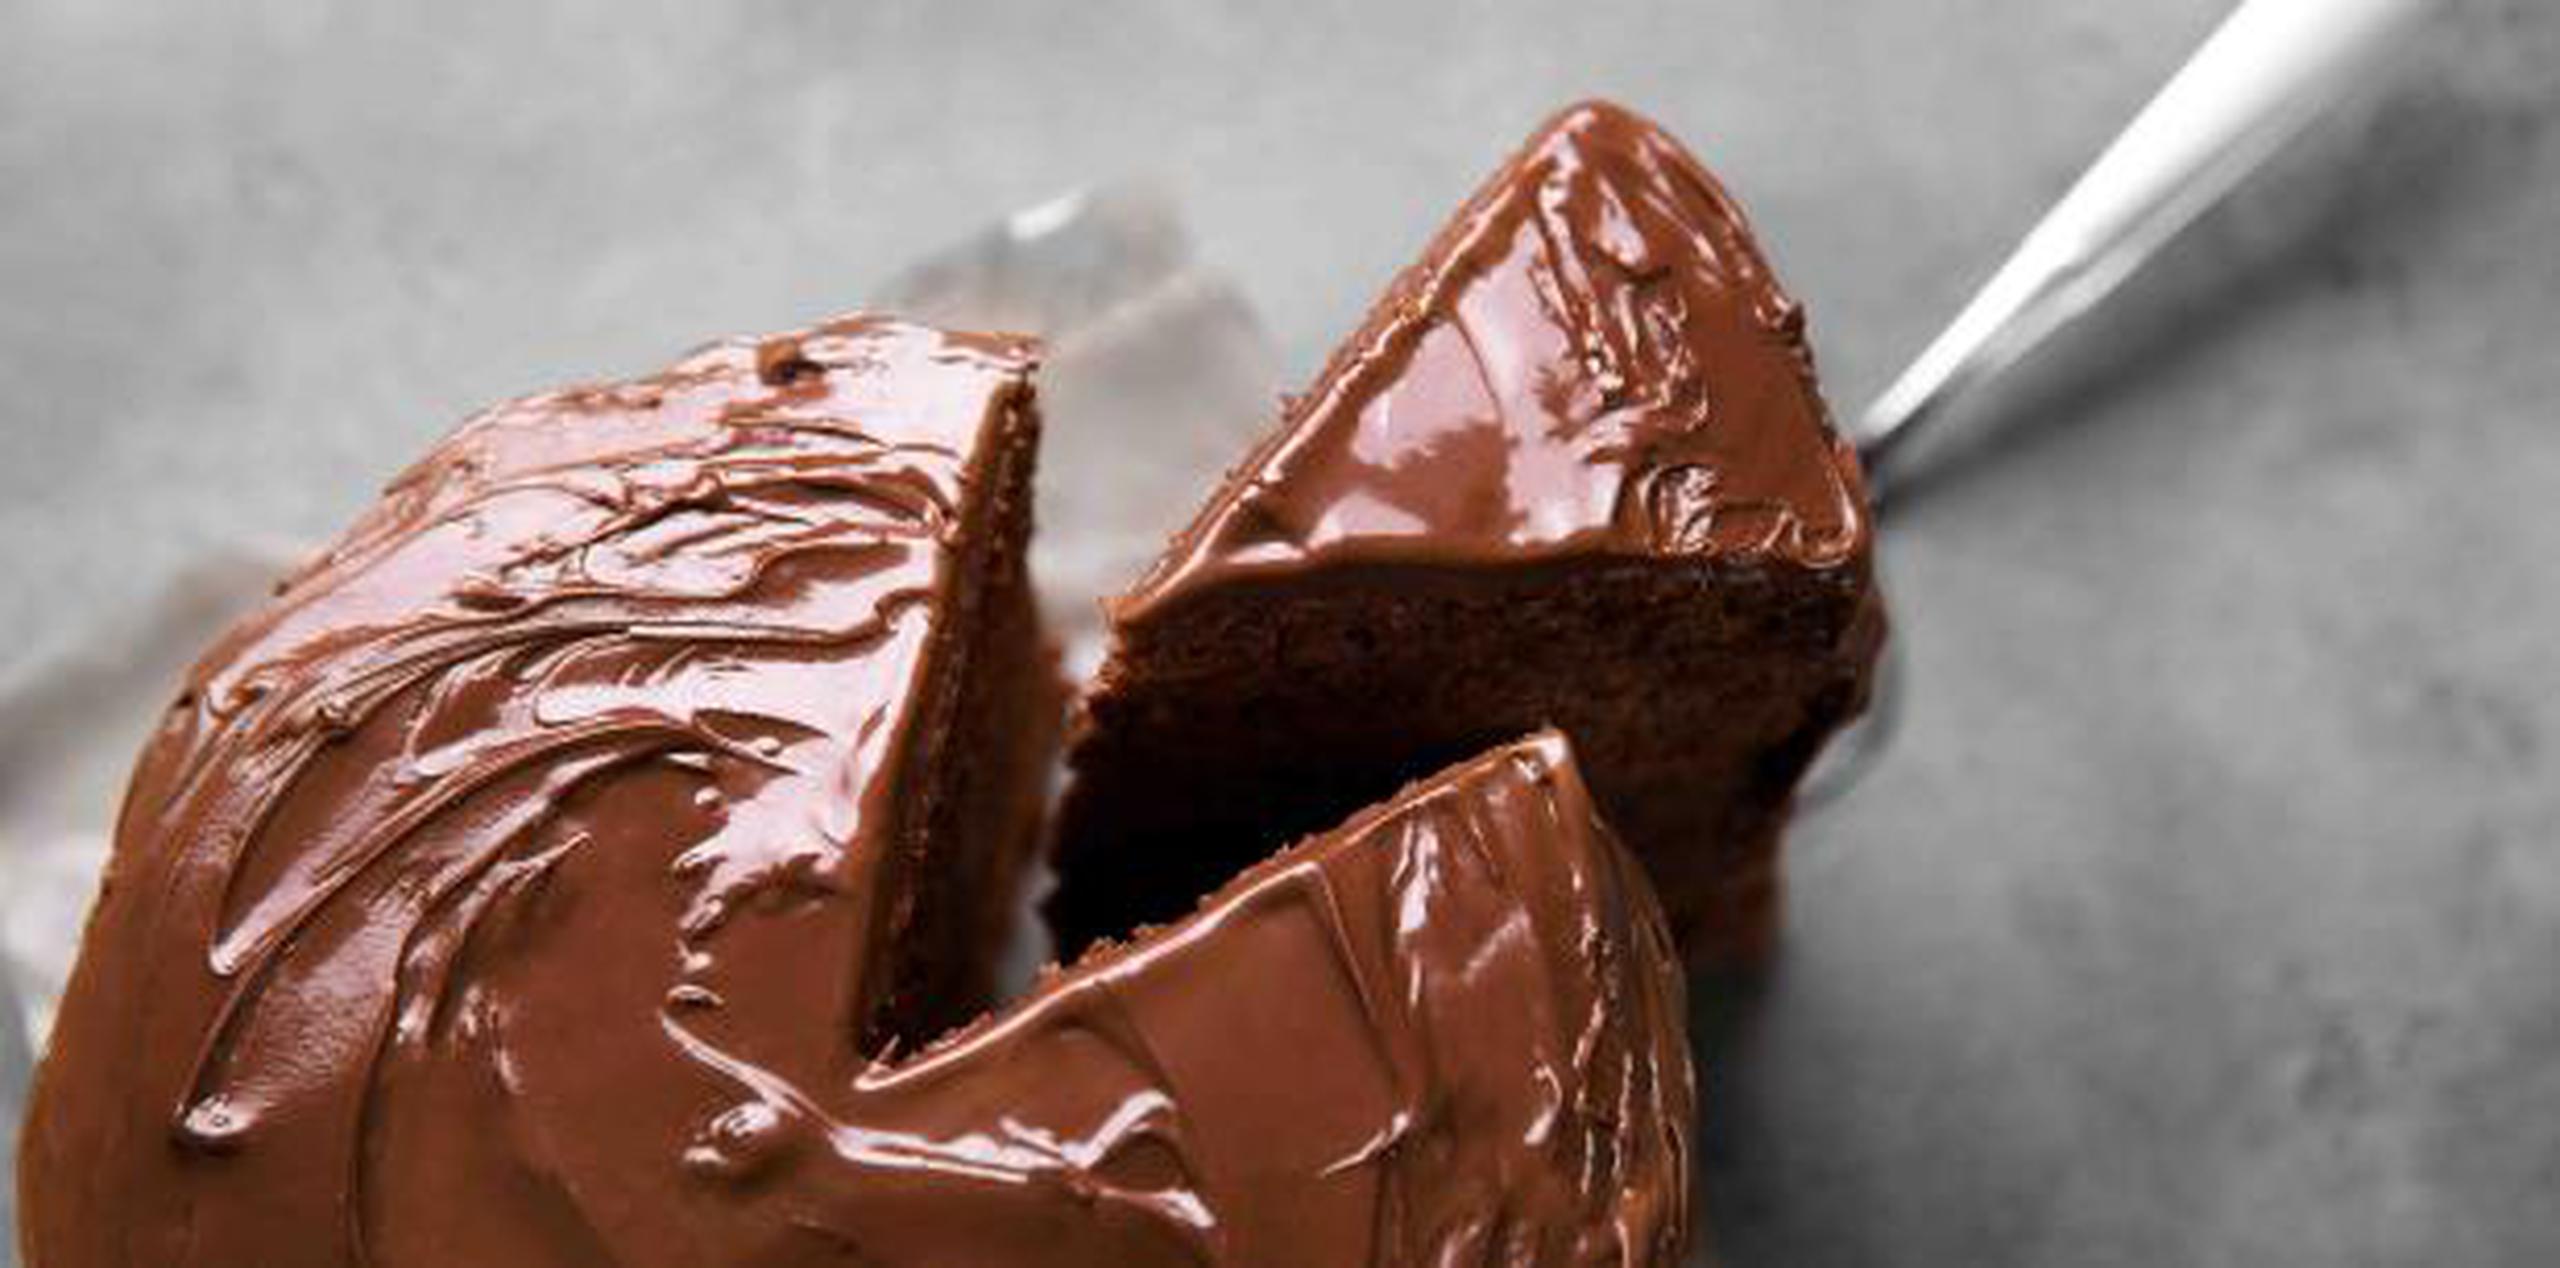 El dulce fue preparado el 3 de mayo. (Shutterstock)